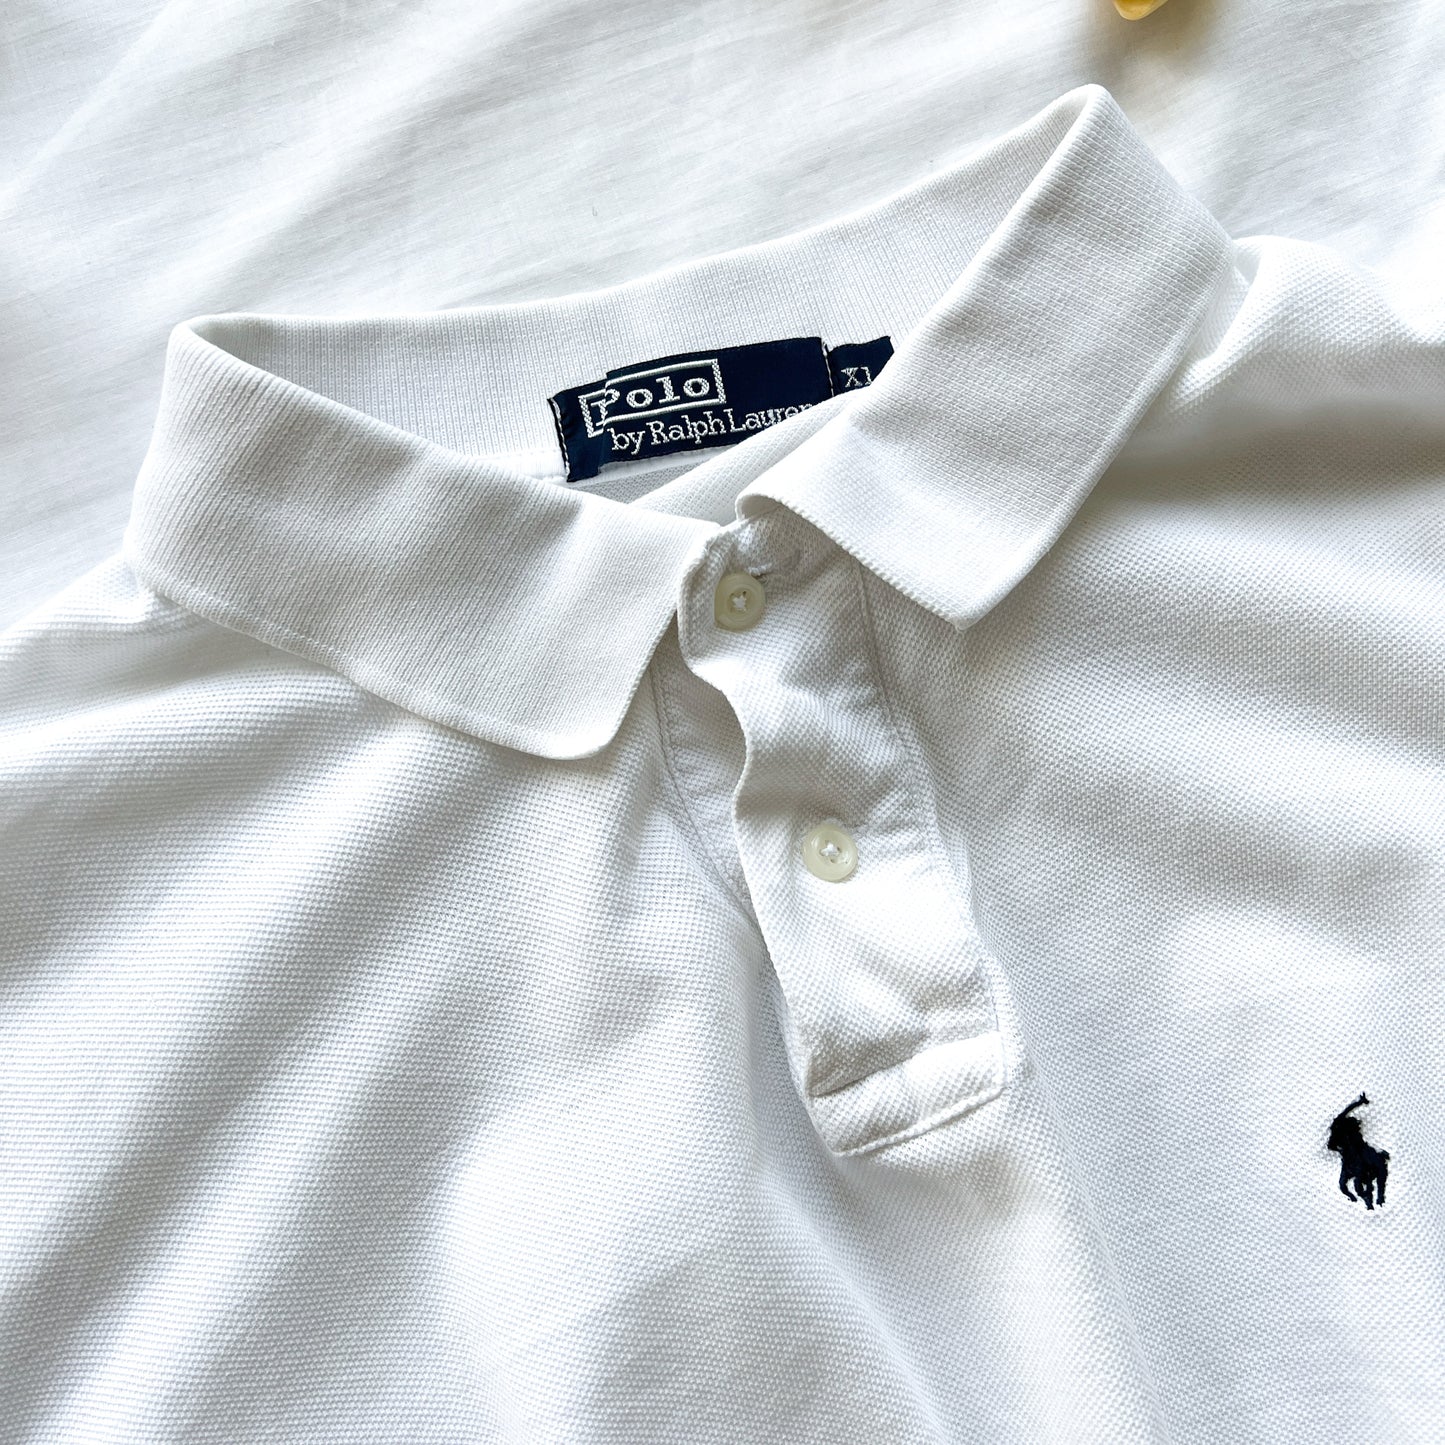 (XL) Ralph Lauren polo crop vintage white